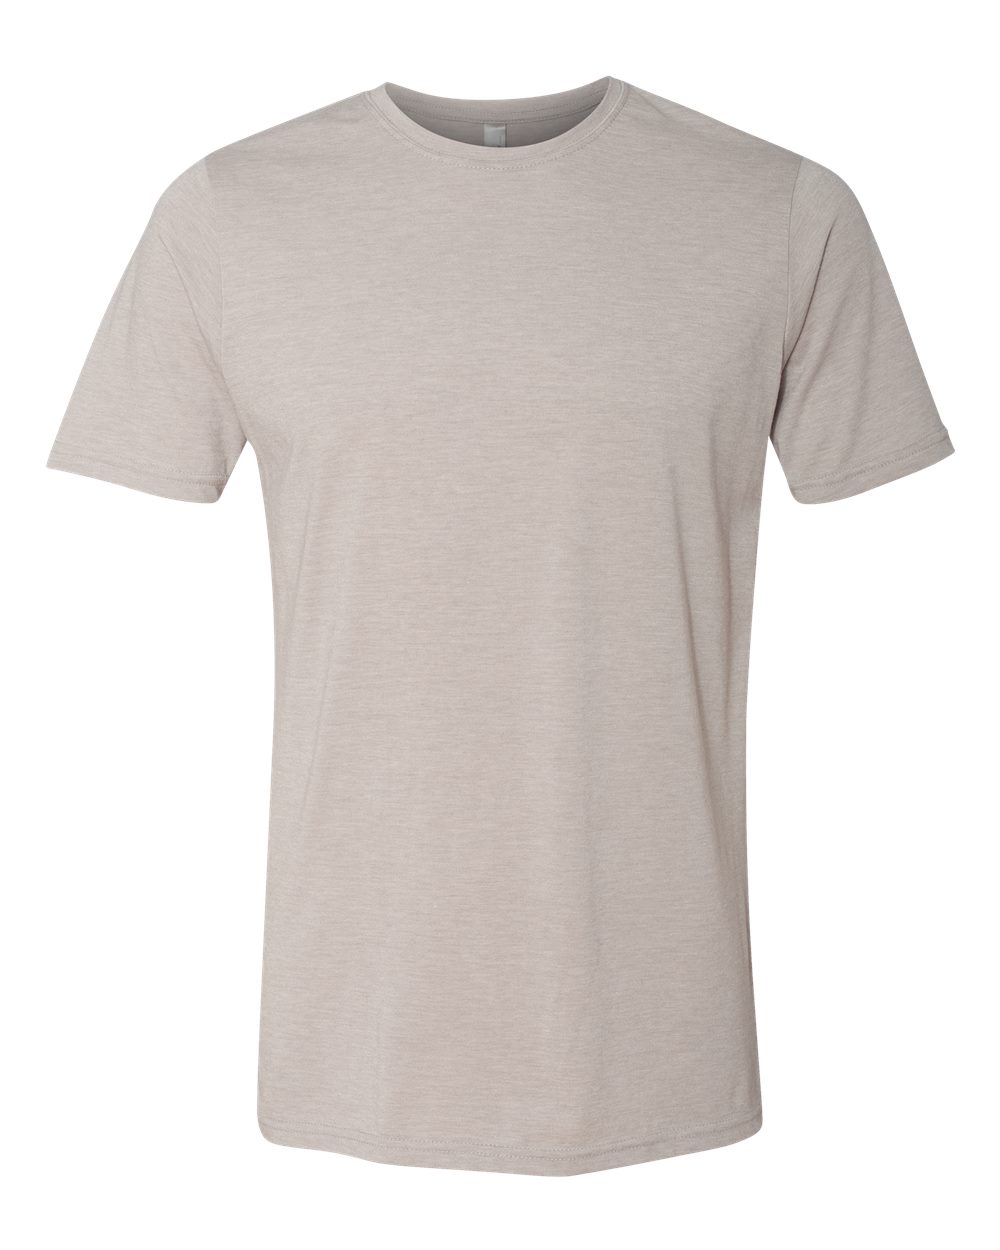 Next Level Unisex Cotton T-Shirt — ZEIDEL & co.